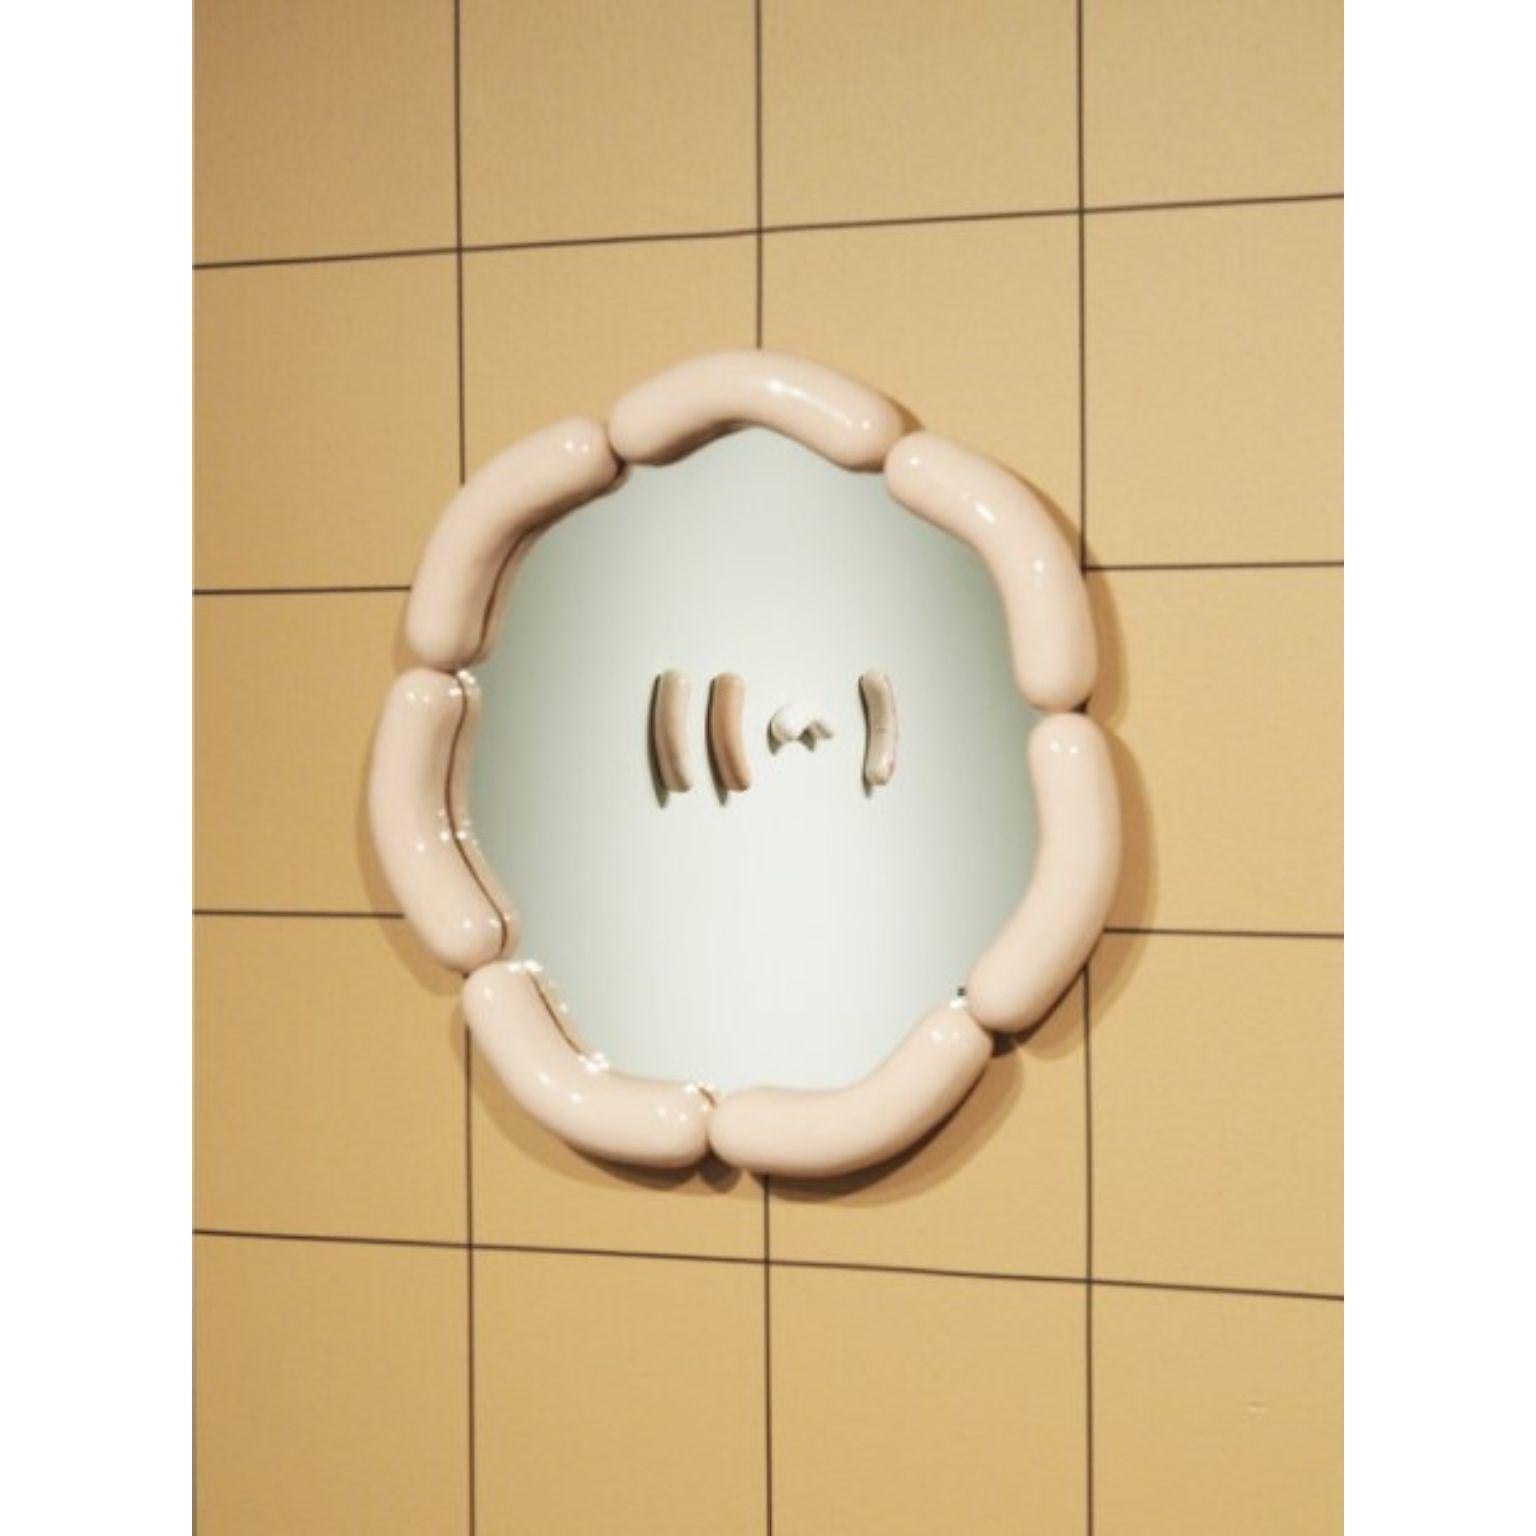 Miroir Wurstie de Tero Kuitunen
MATERIAL : céramique faite à la main, miroir en verre, bois
Dimensions : D 49 x L 49 x H 5 cm
Numéroté et signé.

Miroir mural en céramique, numéroté. Édition ouverte.

Le designer Tero Kuitunen, né en 1986,